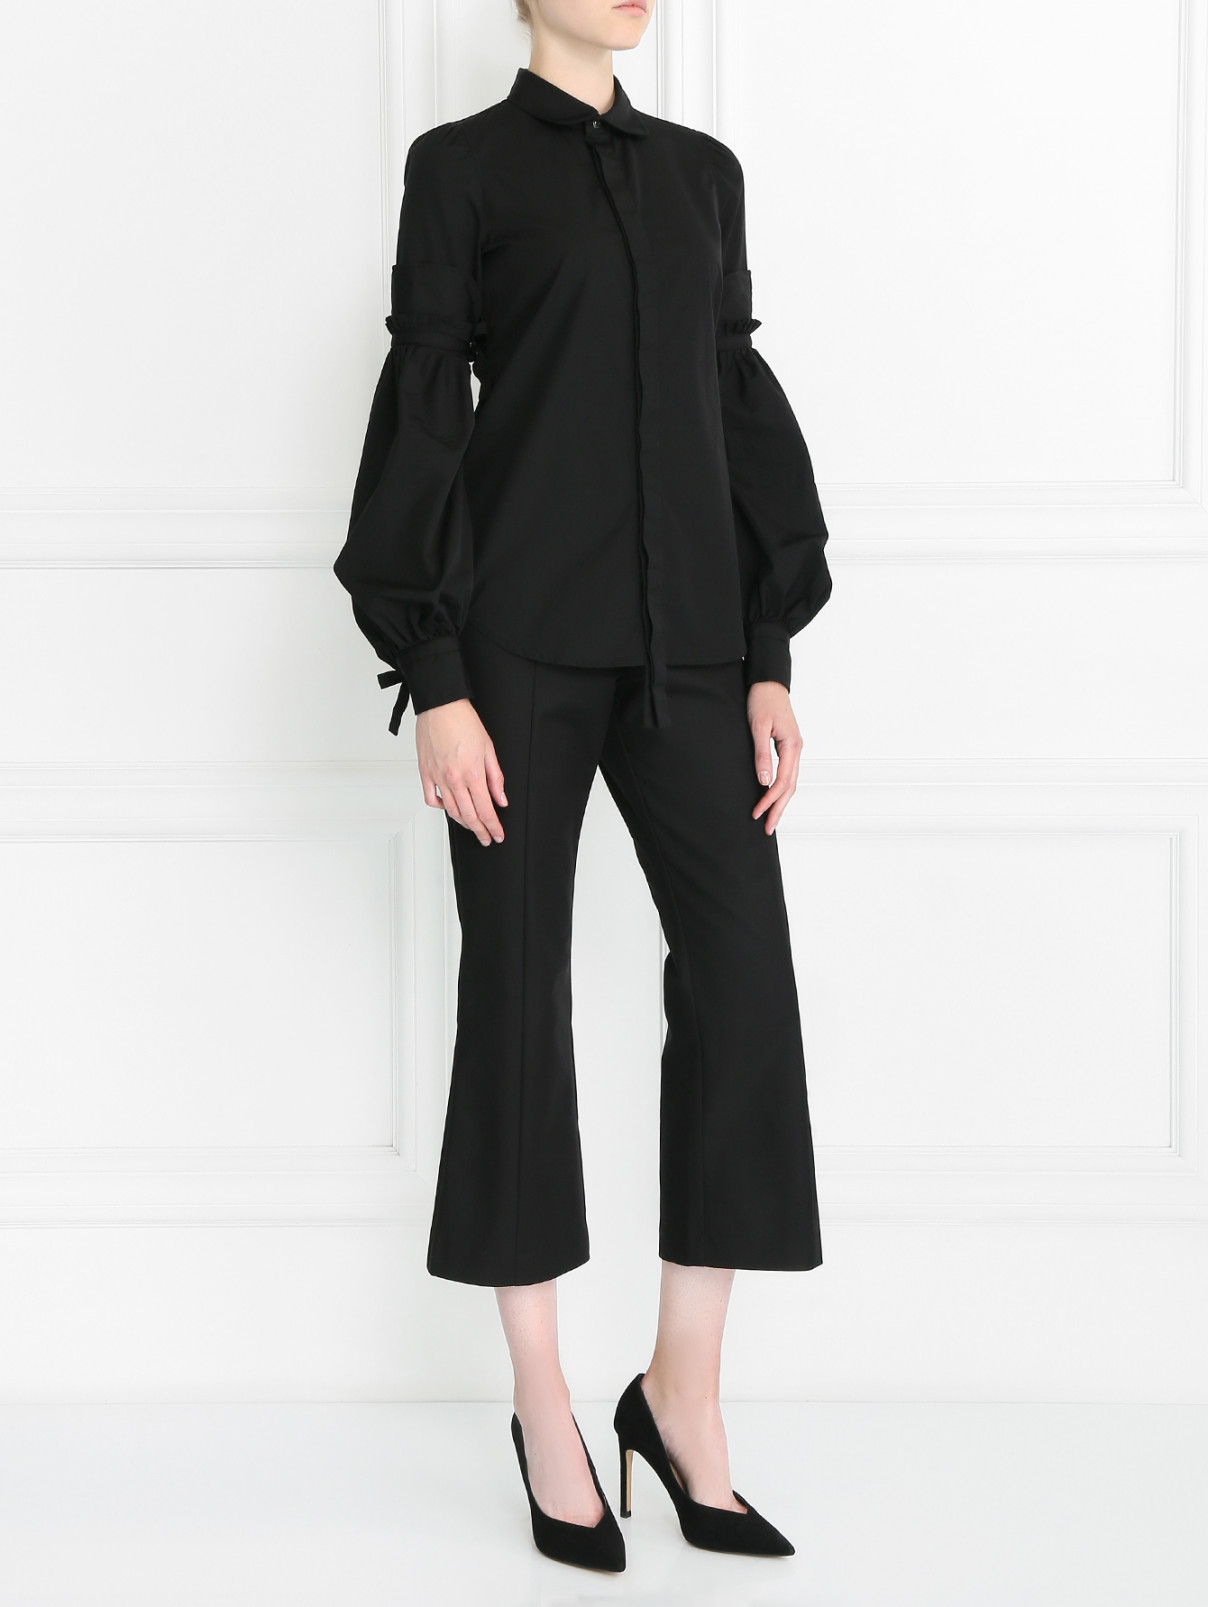 Блуза из хлопка с декоративными рукавами Dsquared2  –  Модель Общий вид  – Цвет:  Черный